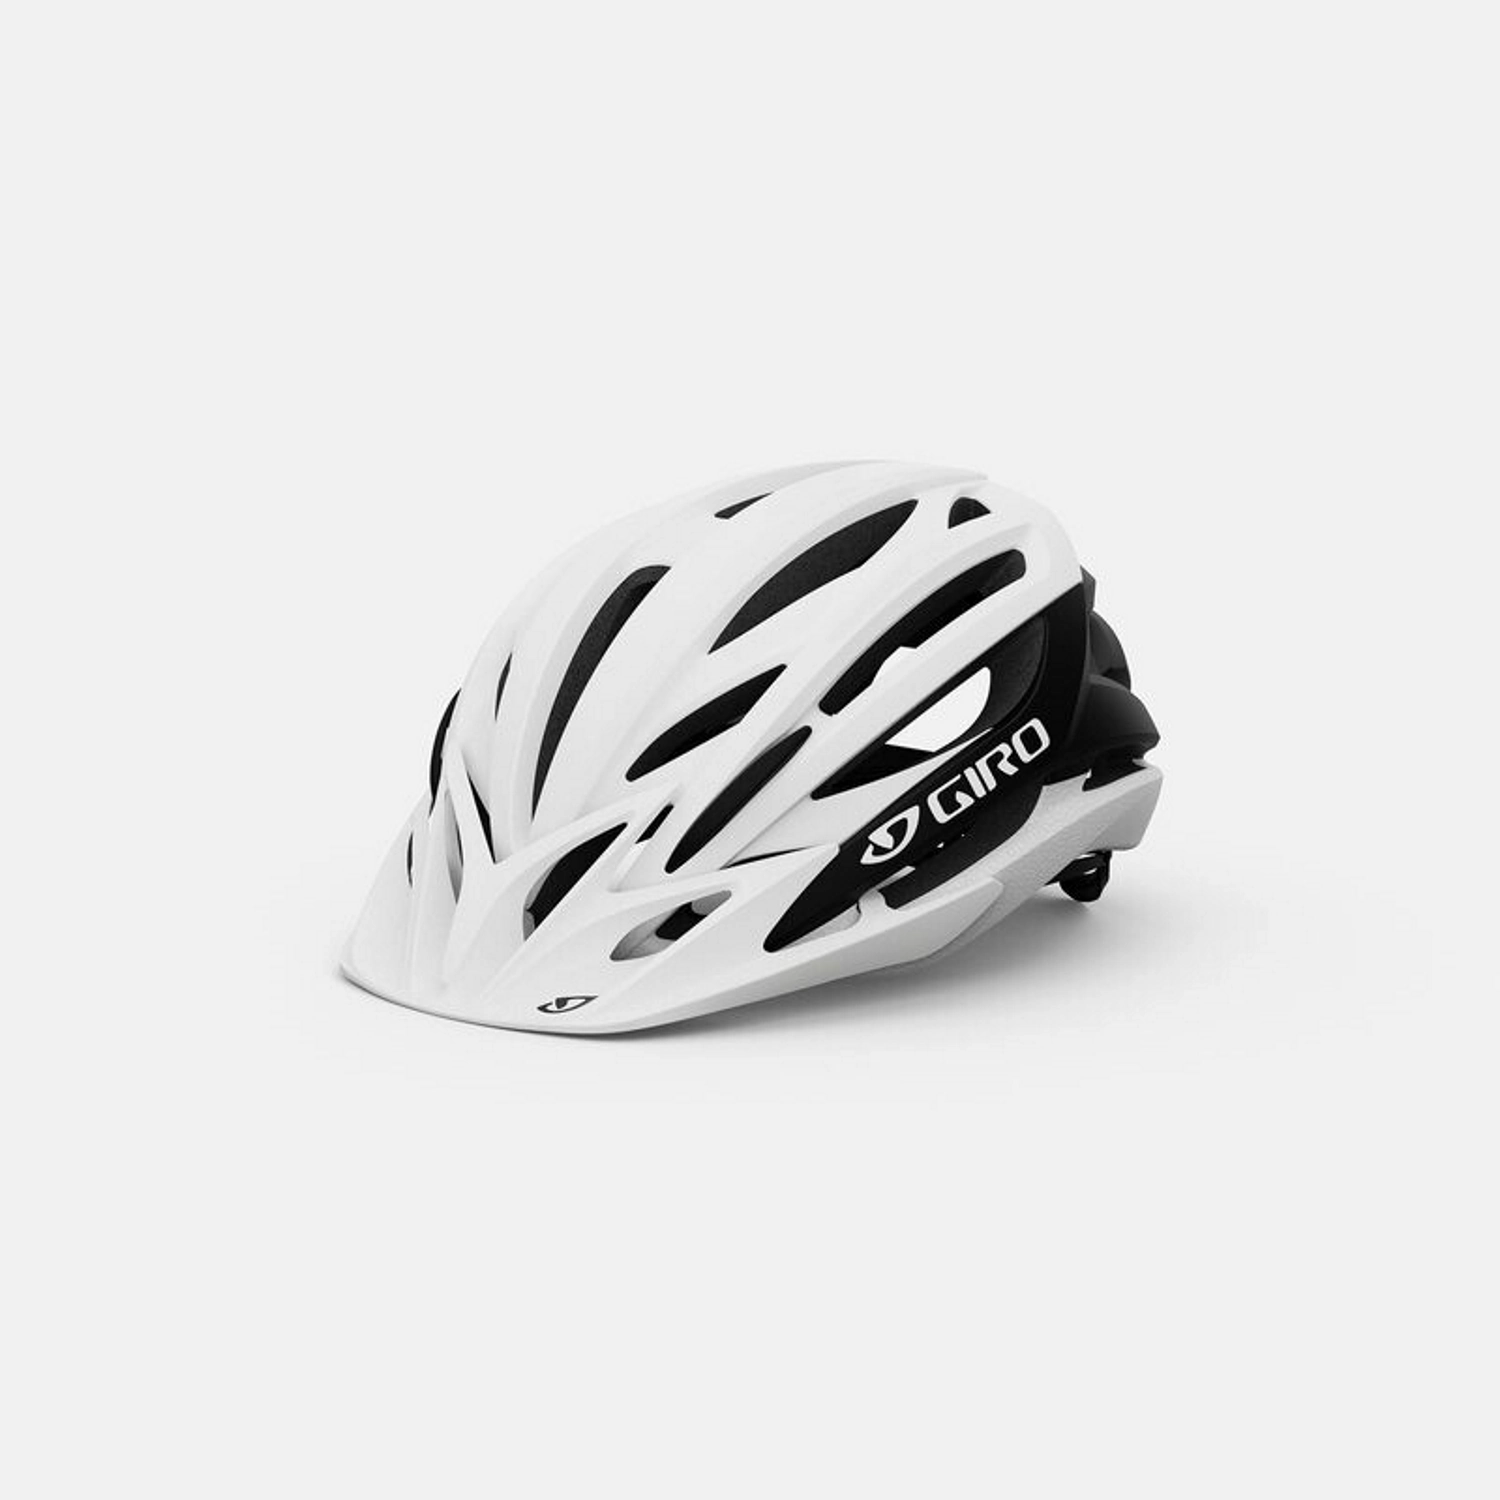 Biały kask rowerowy MTB marki Giro z dużymi otworami wentylacyjnymi